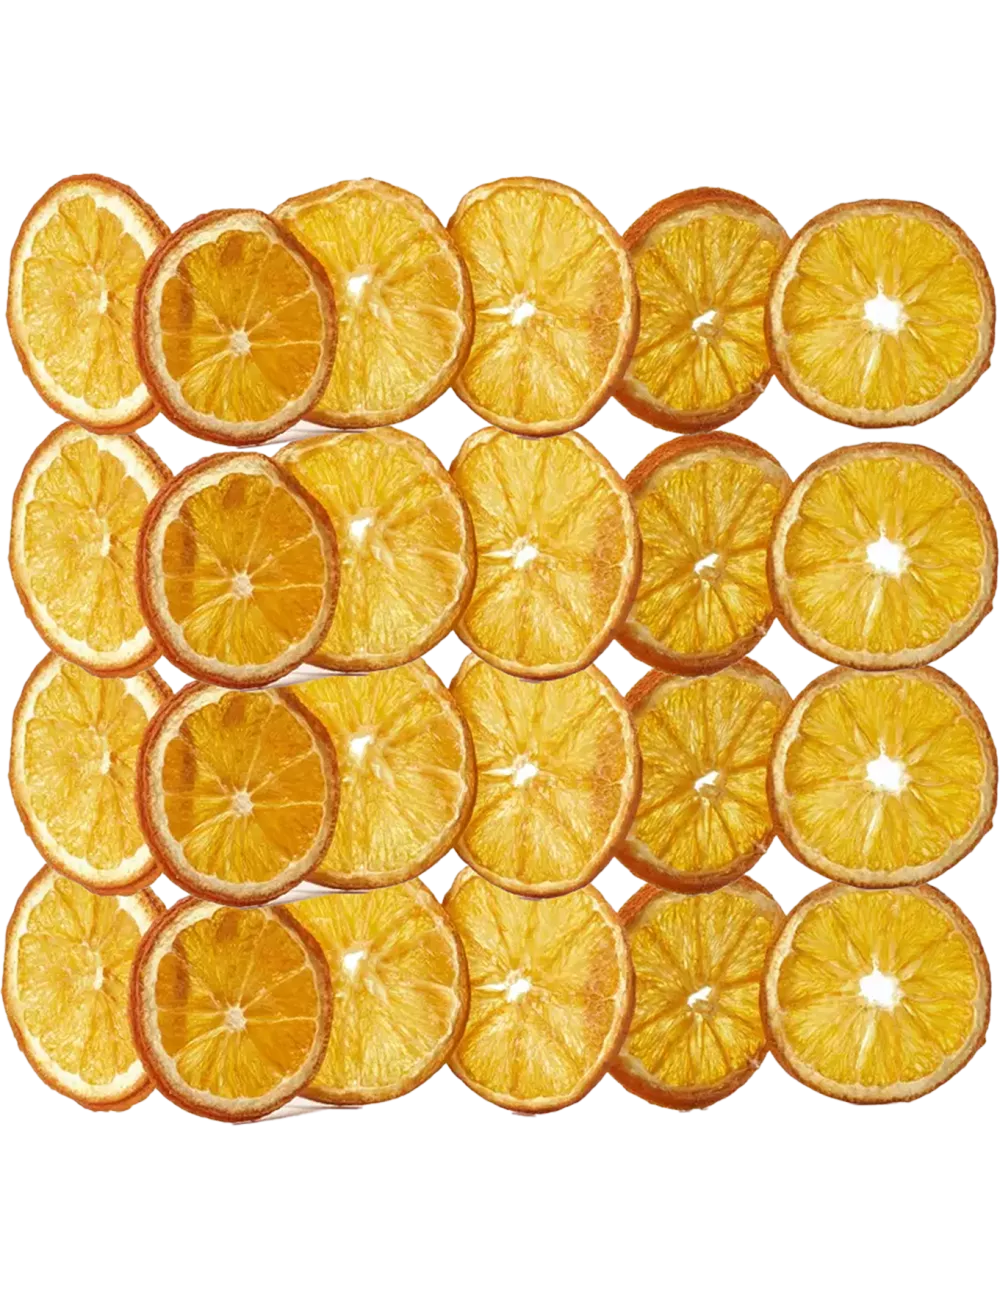 Oranges - Plateau de 280g - Fruits Déshydratés